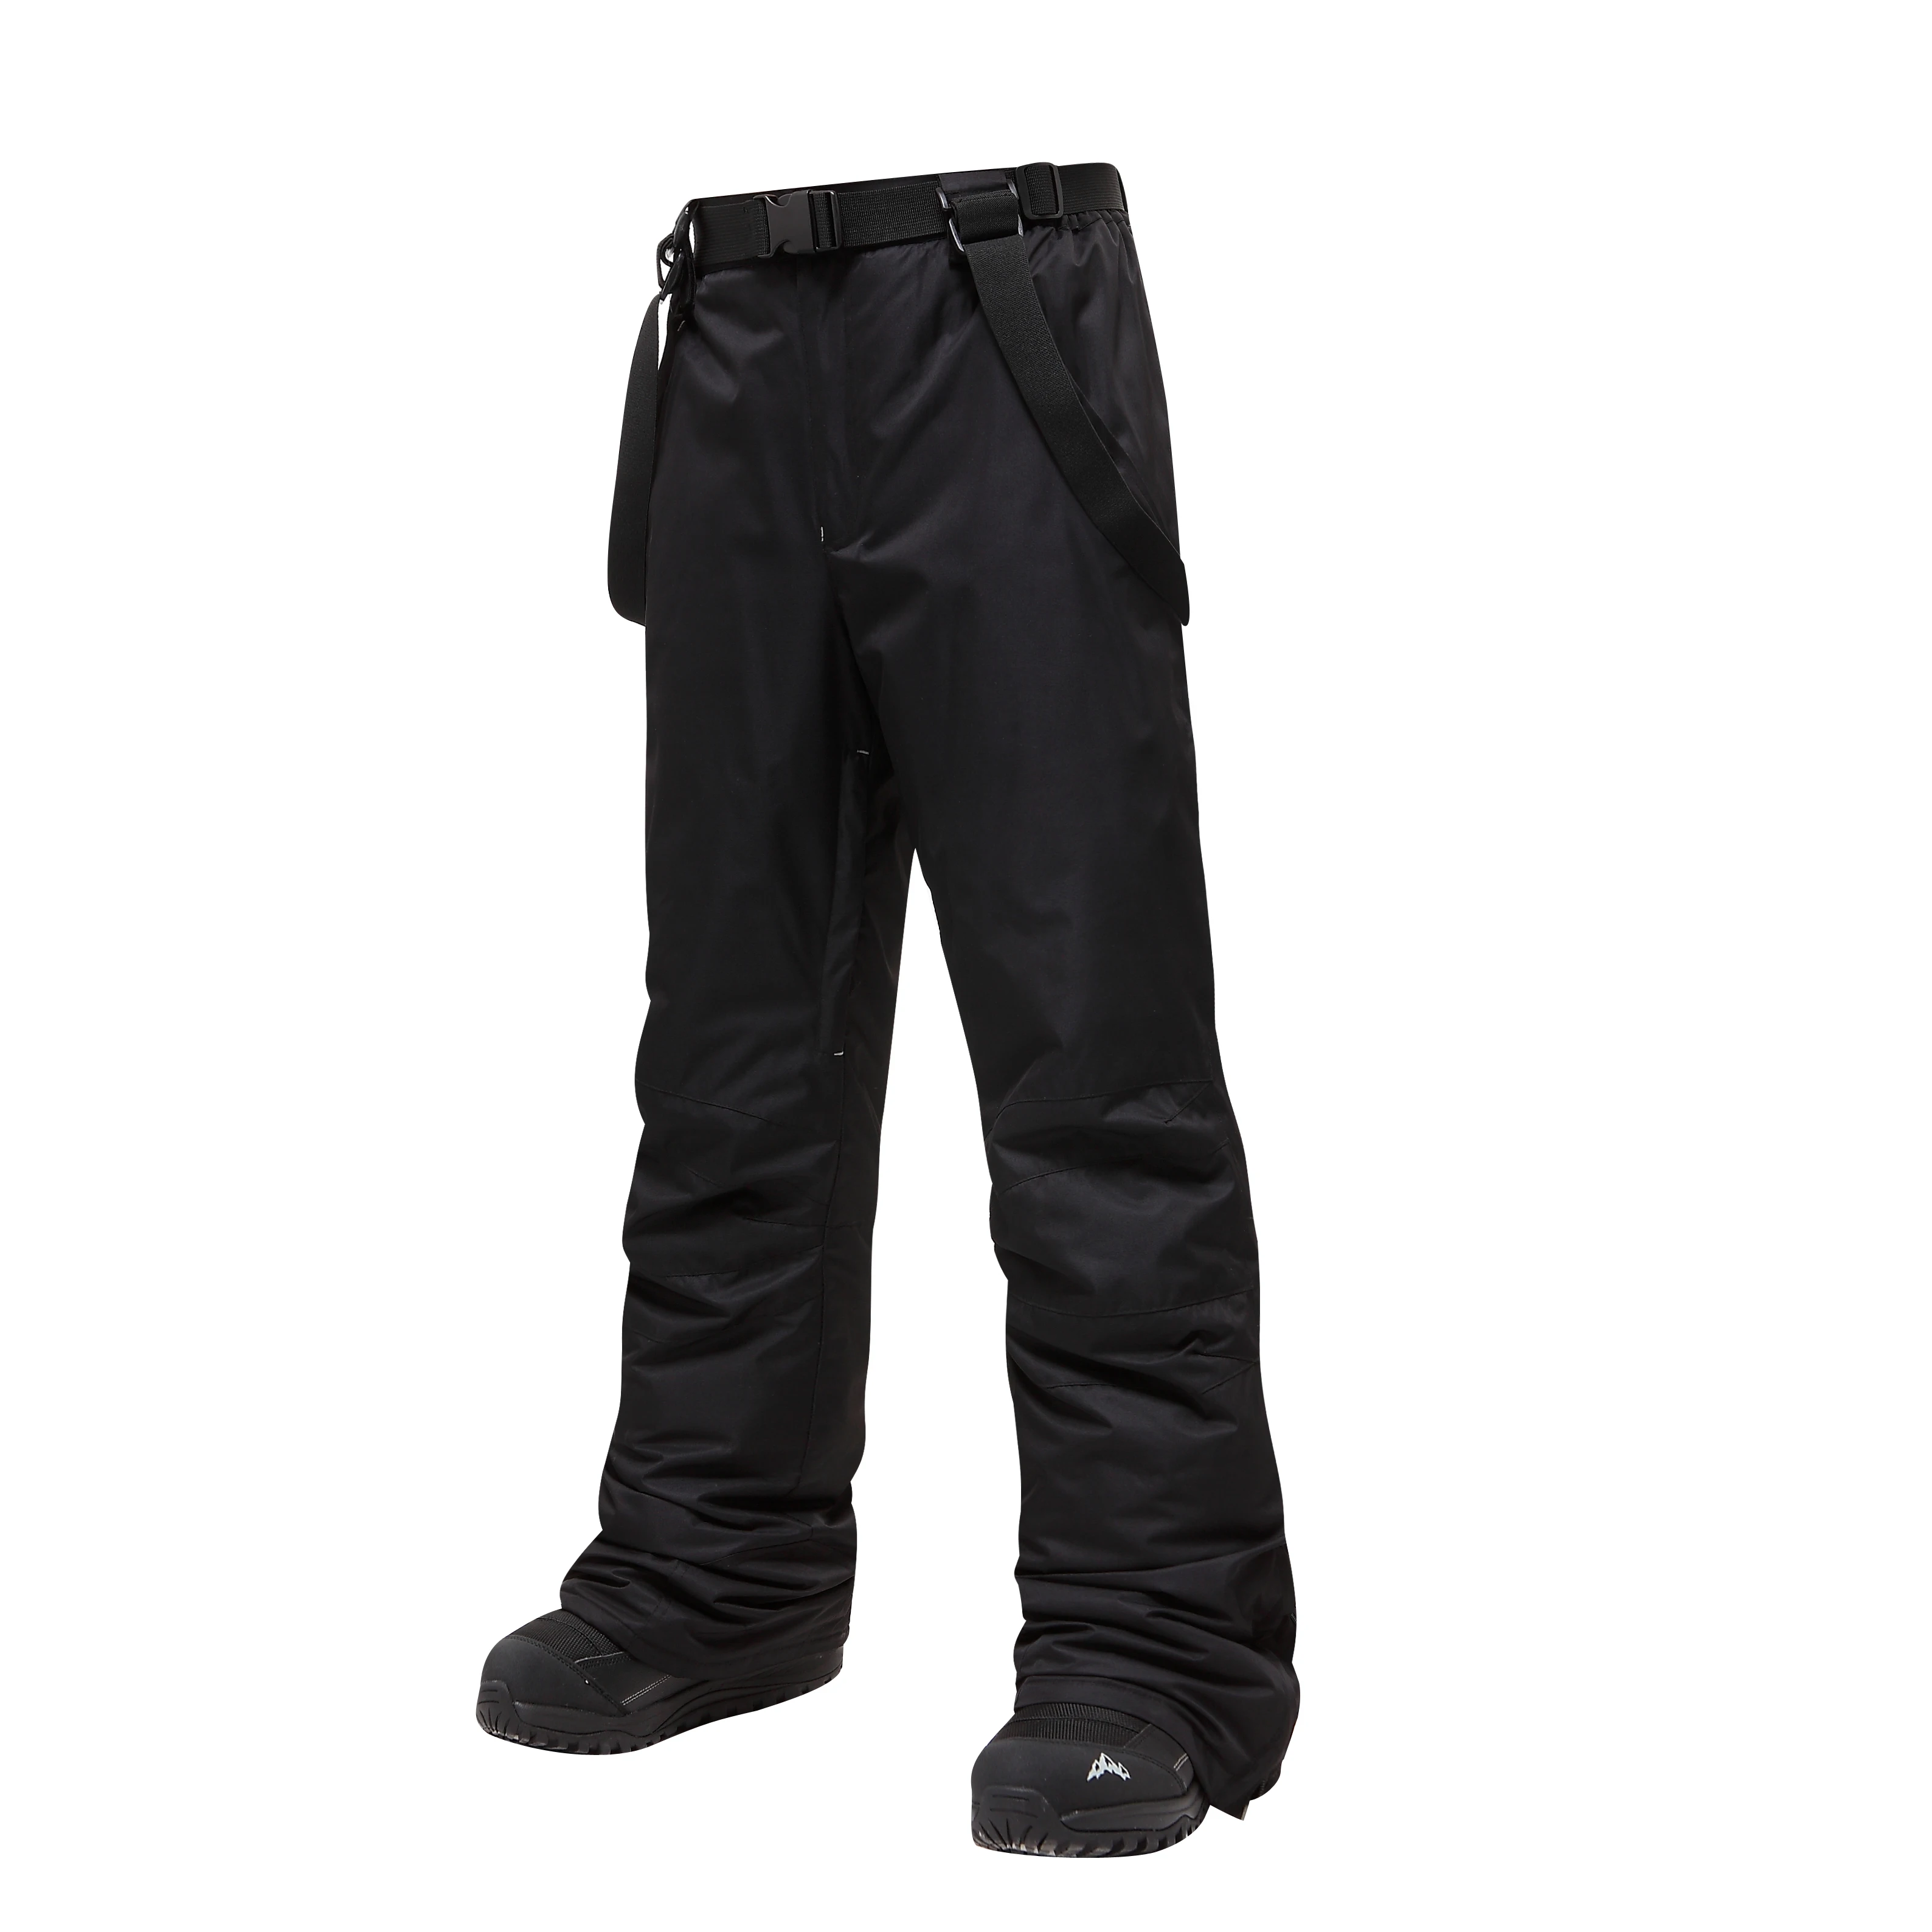 2020 уличные Мужские штаны для сноуборда до 30 градусов, мужские лыжные штаны, водонепроницаемые дышащие зимние штаны для снега, мужские бренд... от AliExpress RU&CIS NEW